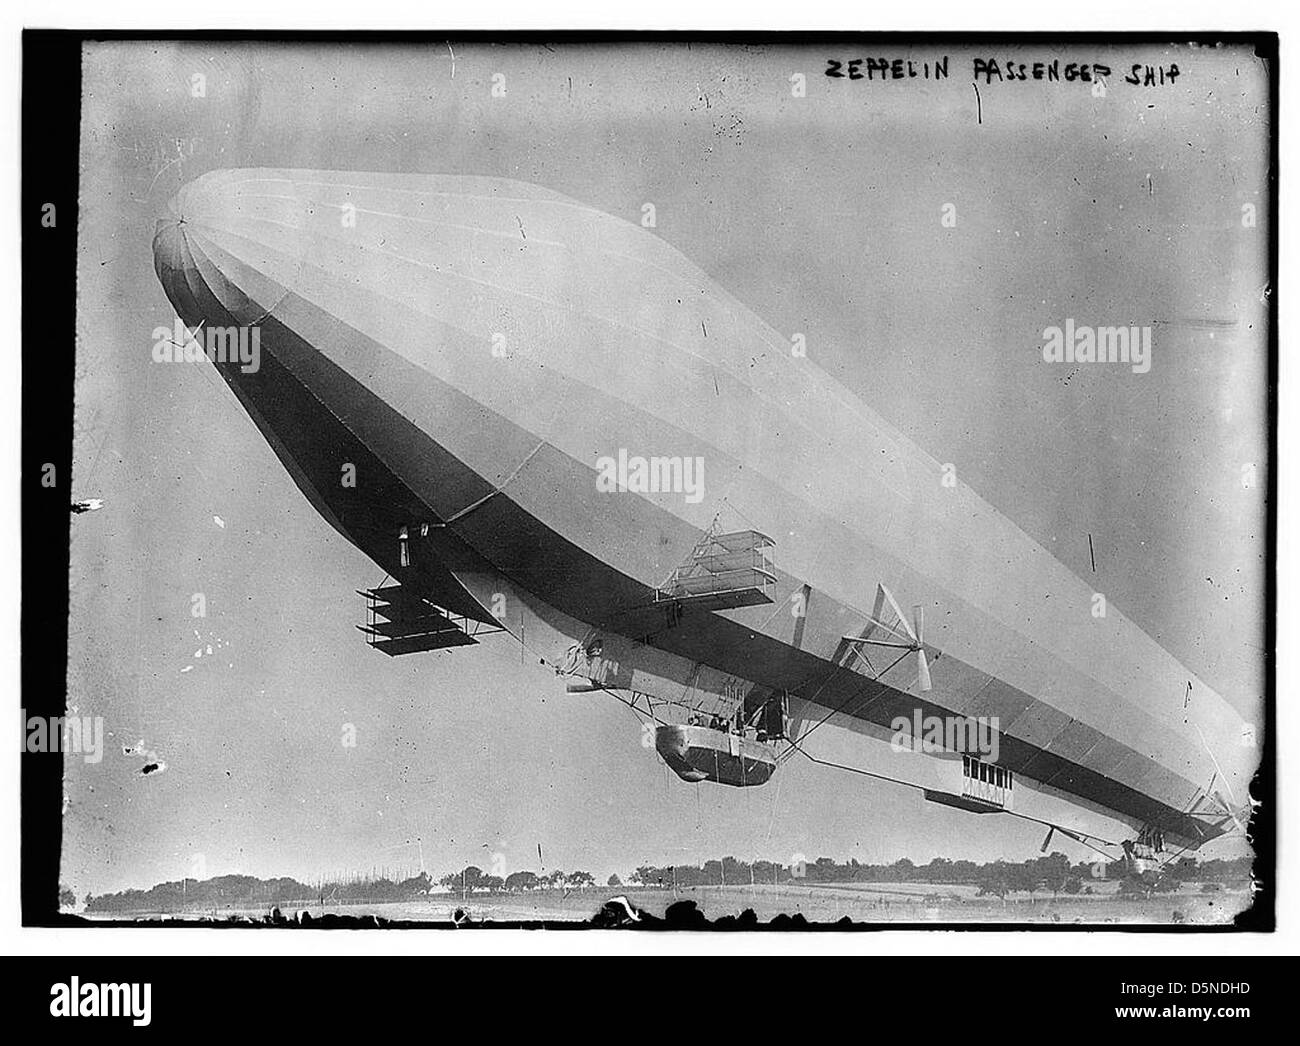 Zeppelin Passenger ship (LOC) Stock Photo